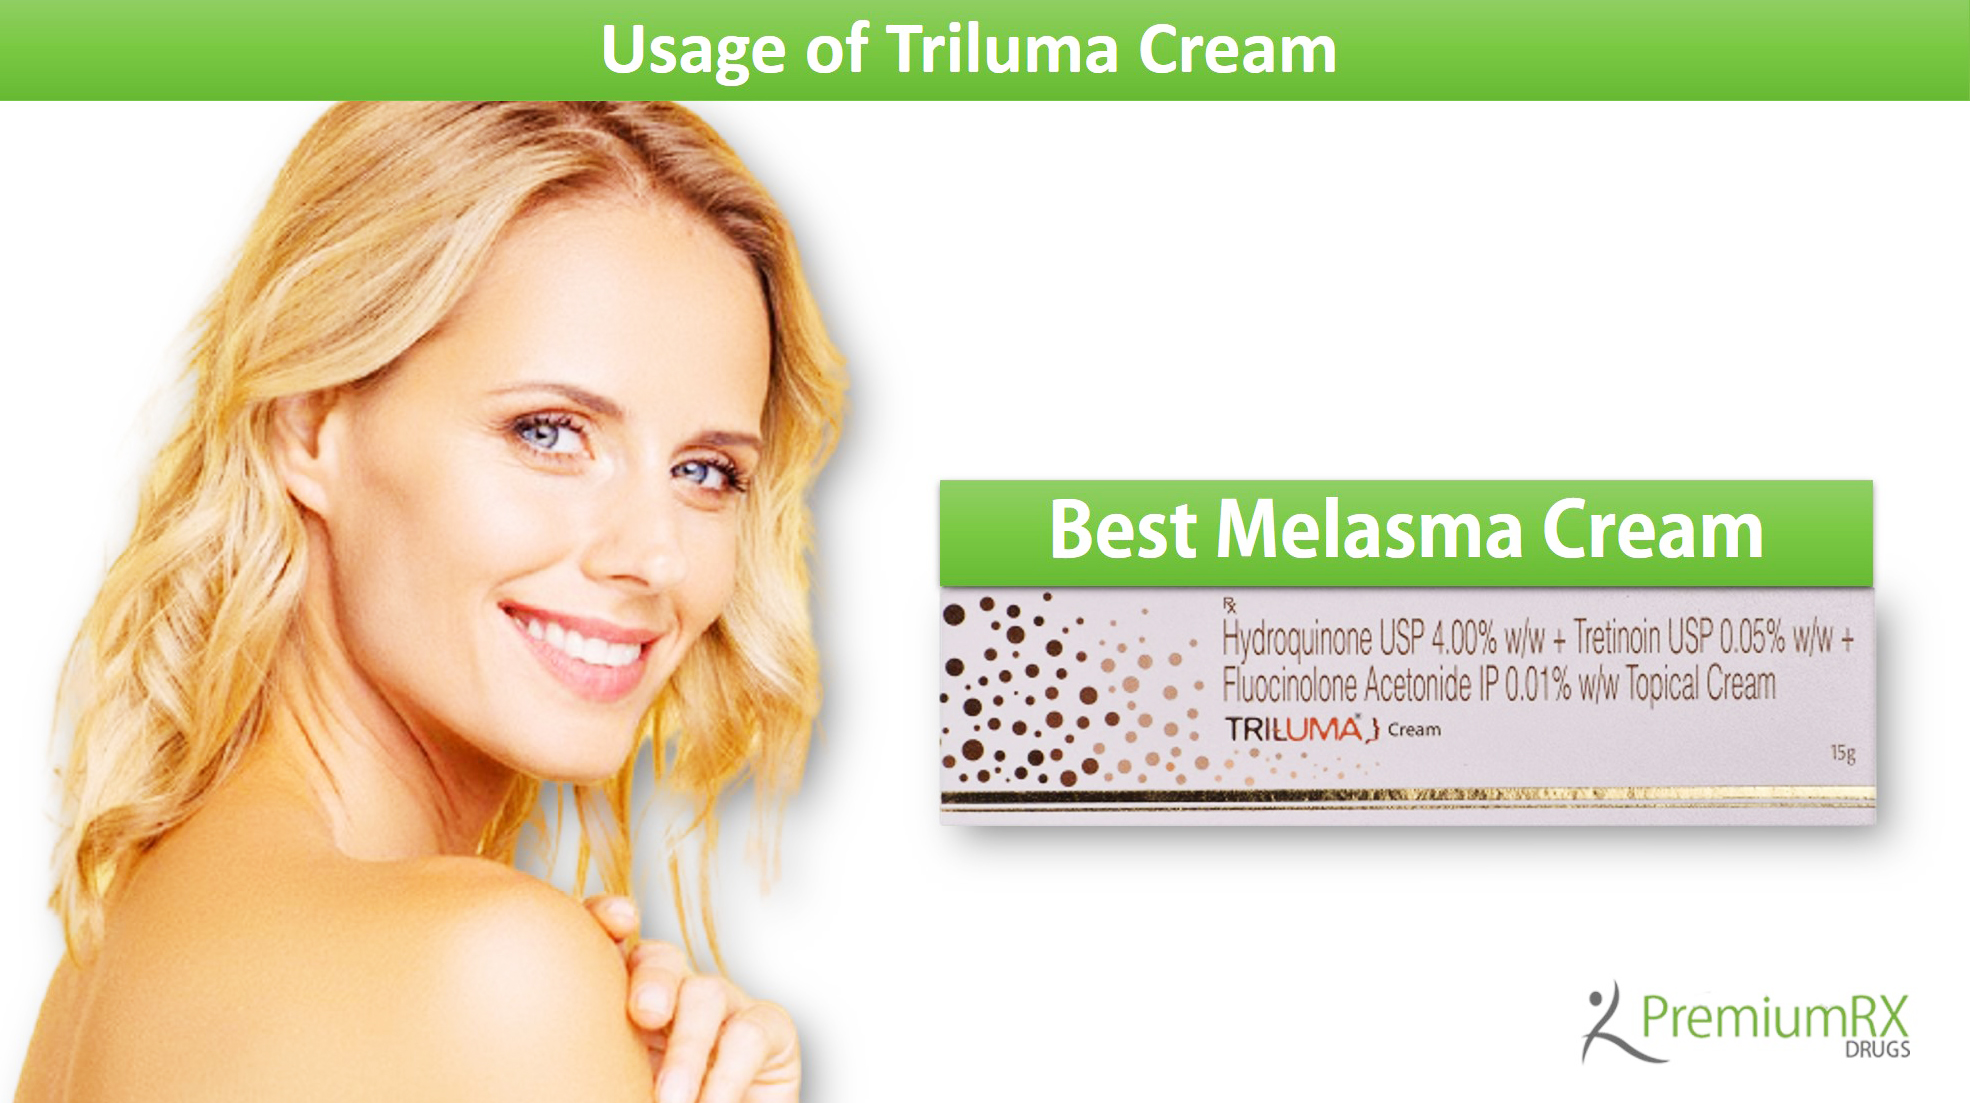 How Does Triluma Cream Work?